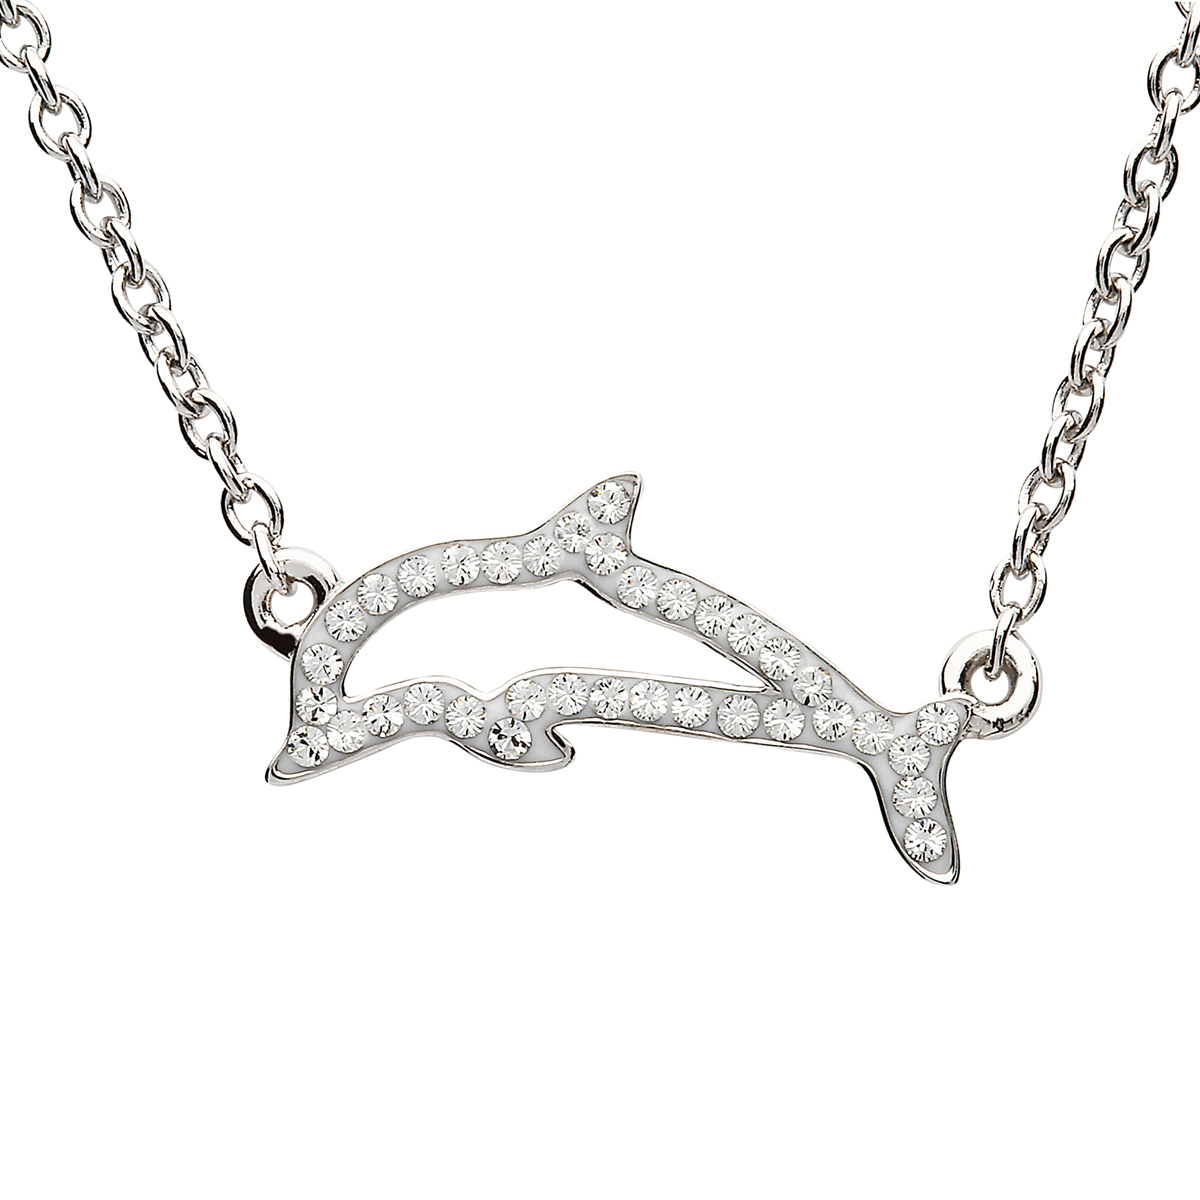 Crystal Dolphin Kette aus Irland - Ein Delphin mit Swarovski Kristallen